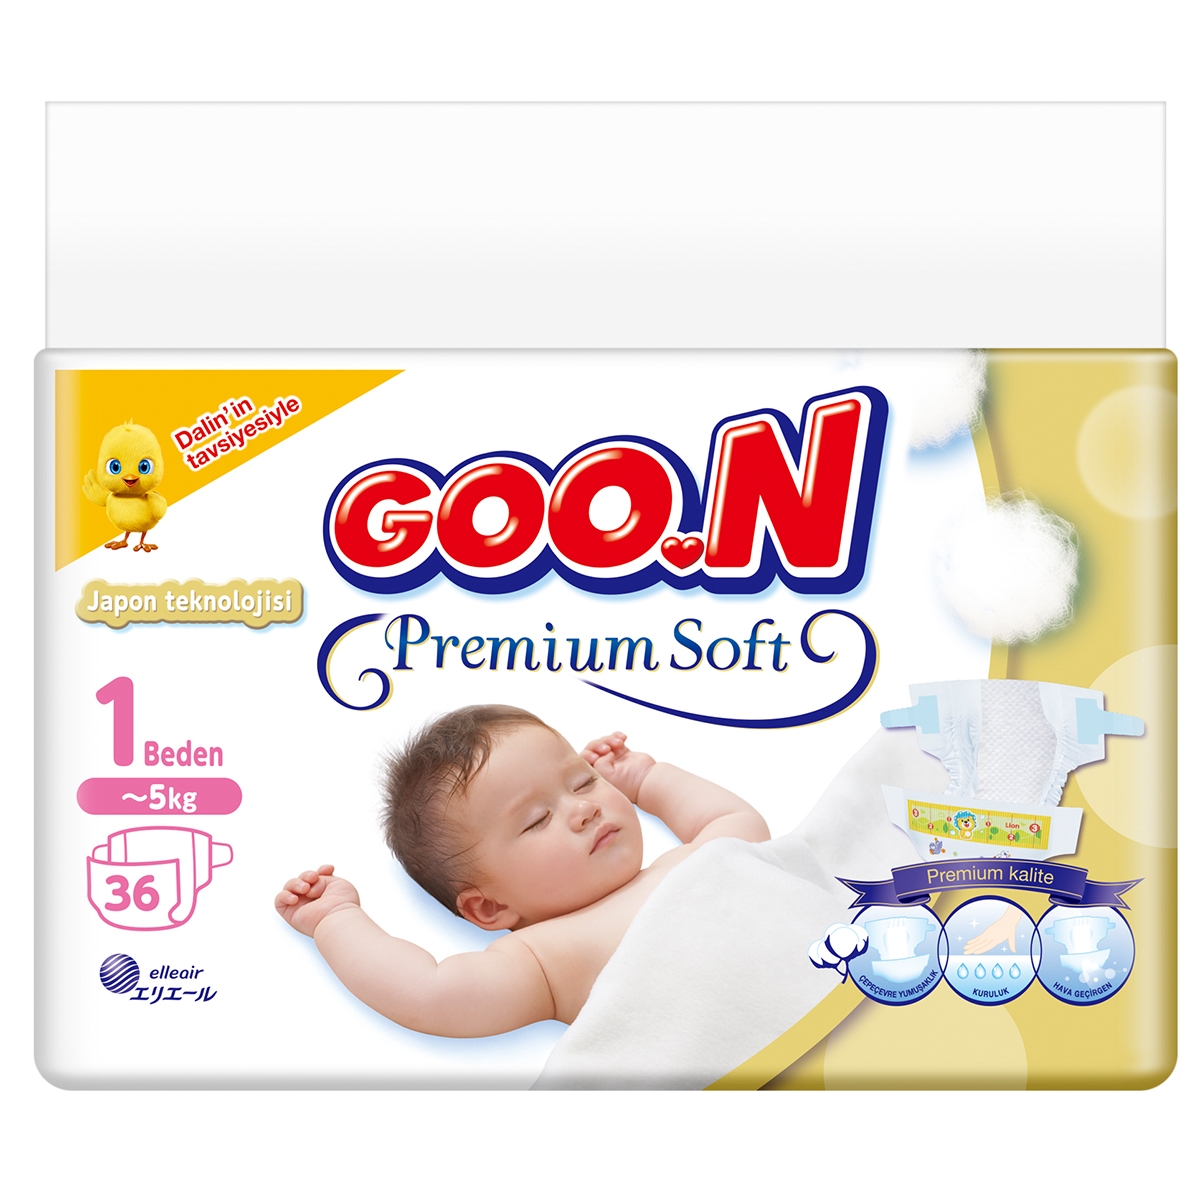 Goon Premium Soft Eko Bebek Bezi 1 Beden 36 Adet